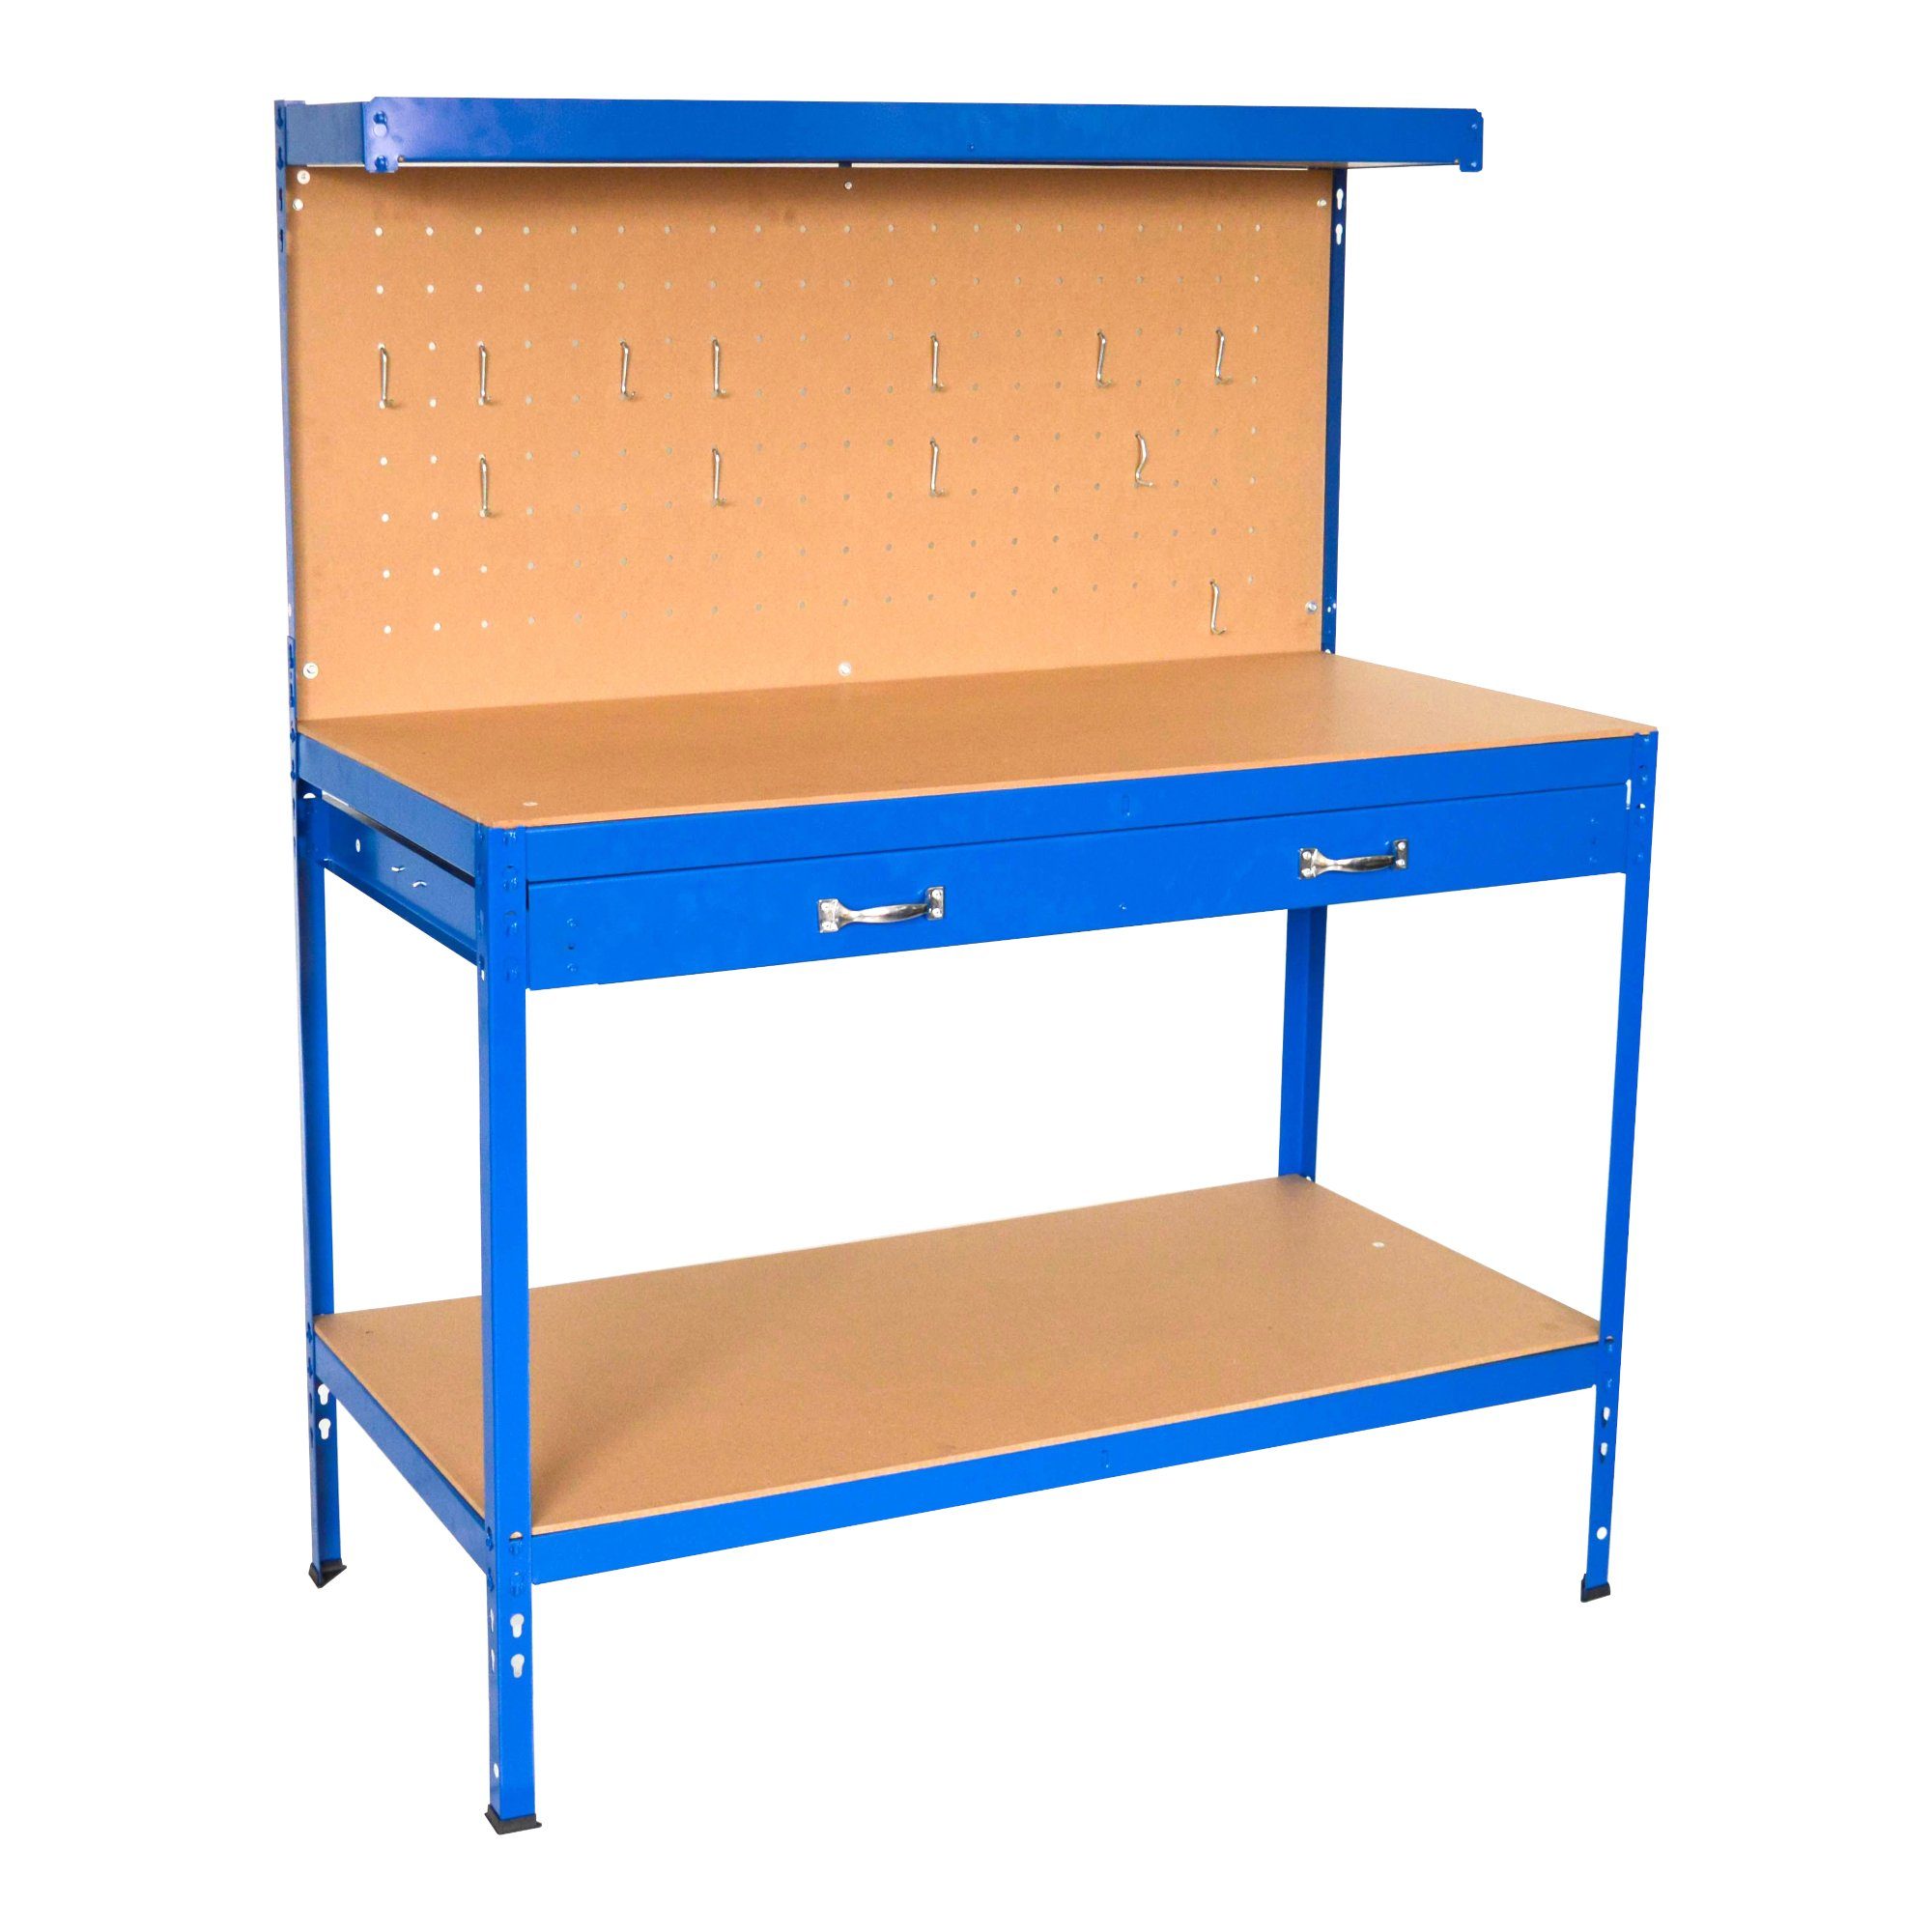 Perfekte Qualität, günstiger Preis! in.tec Werkbank, Berching Werktisch Blau 120x60x150cm